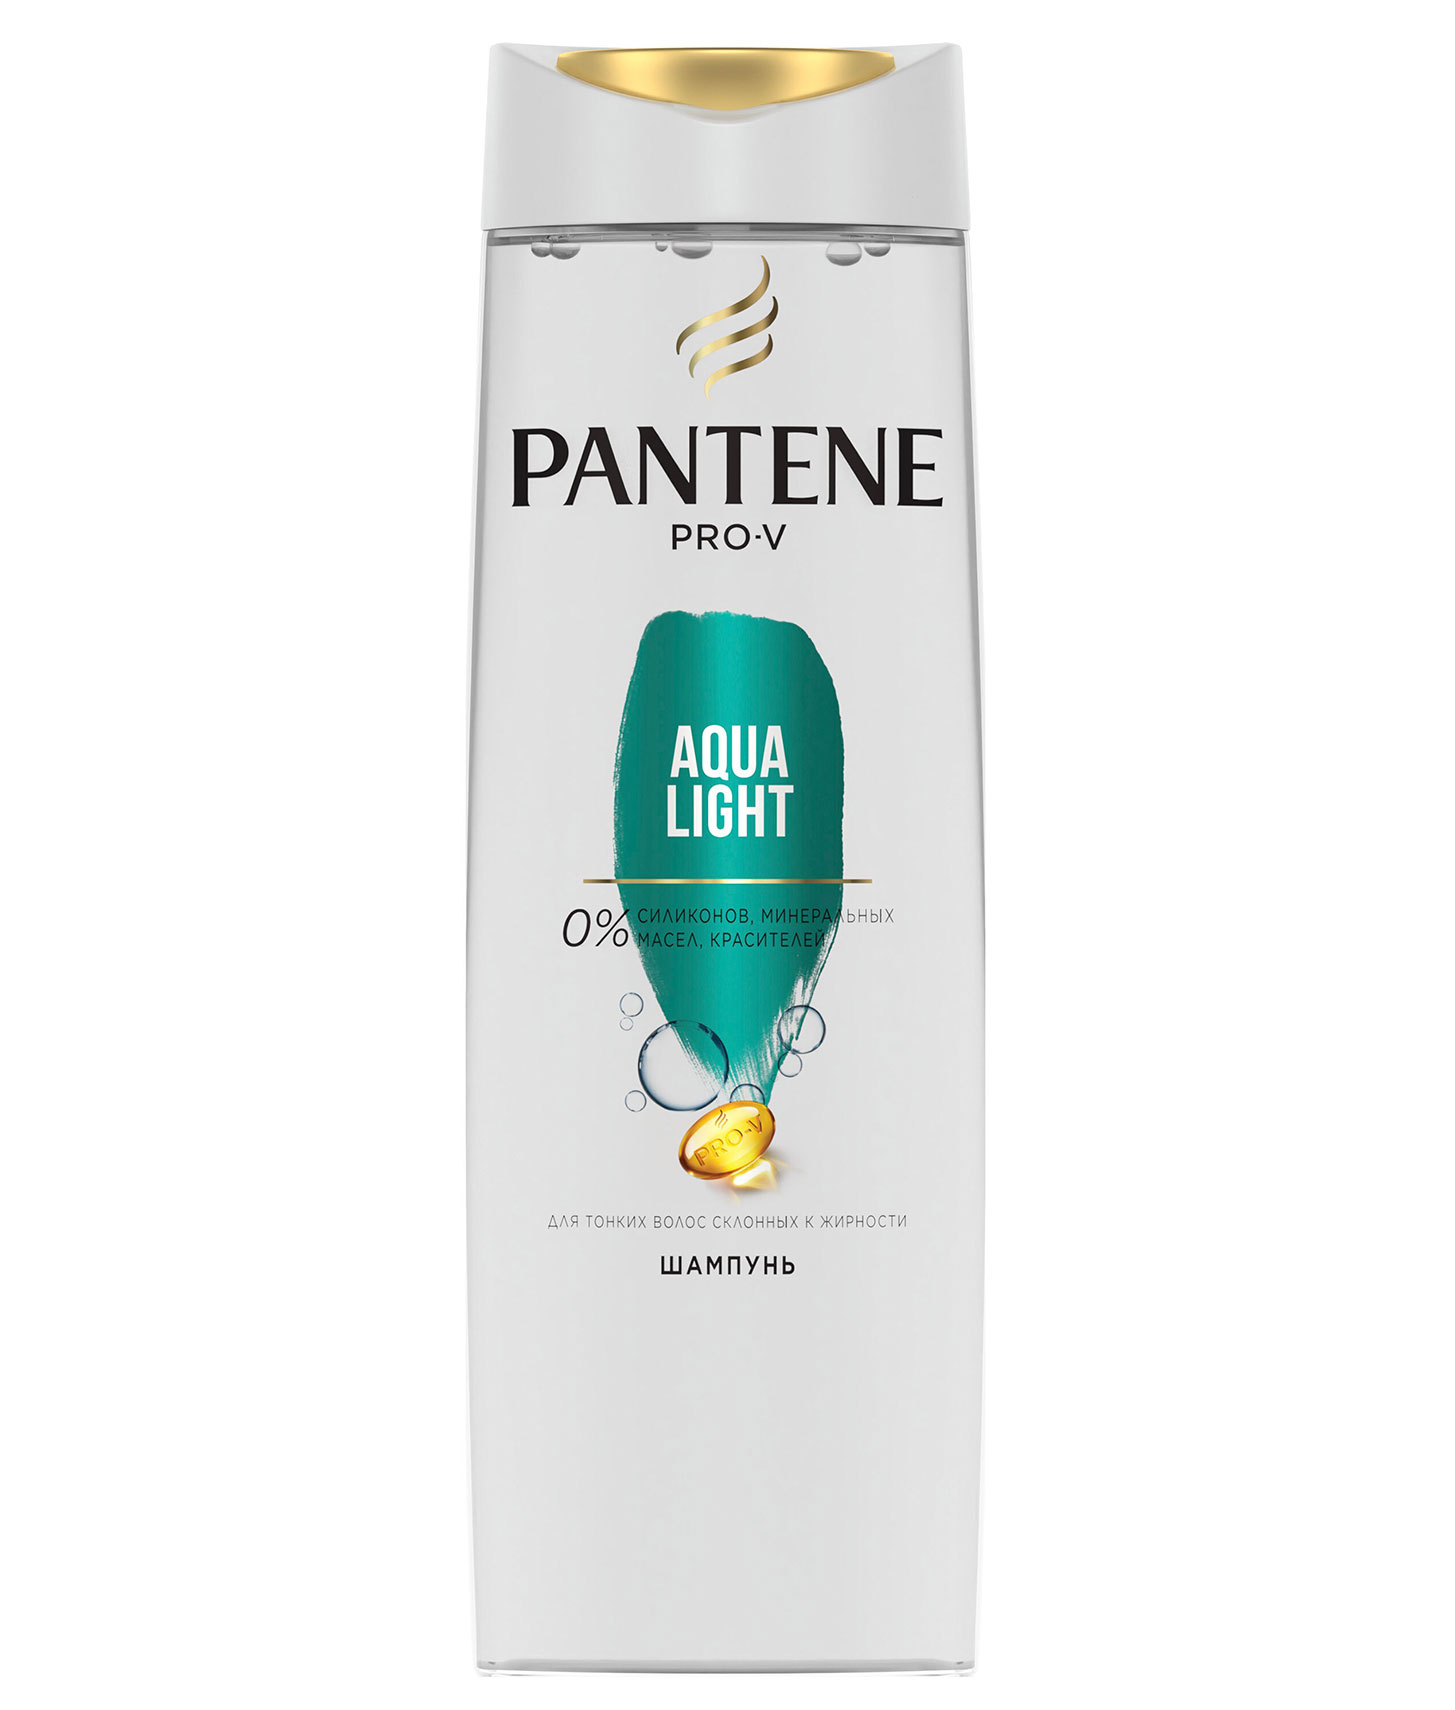 Шампунь Pantene Pro-V Aqua Light для тонких волос, склонных к жирности, 400 мл